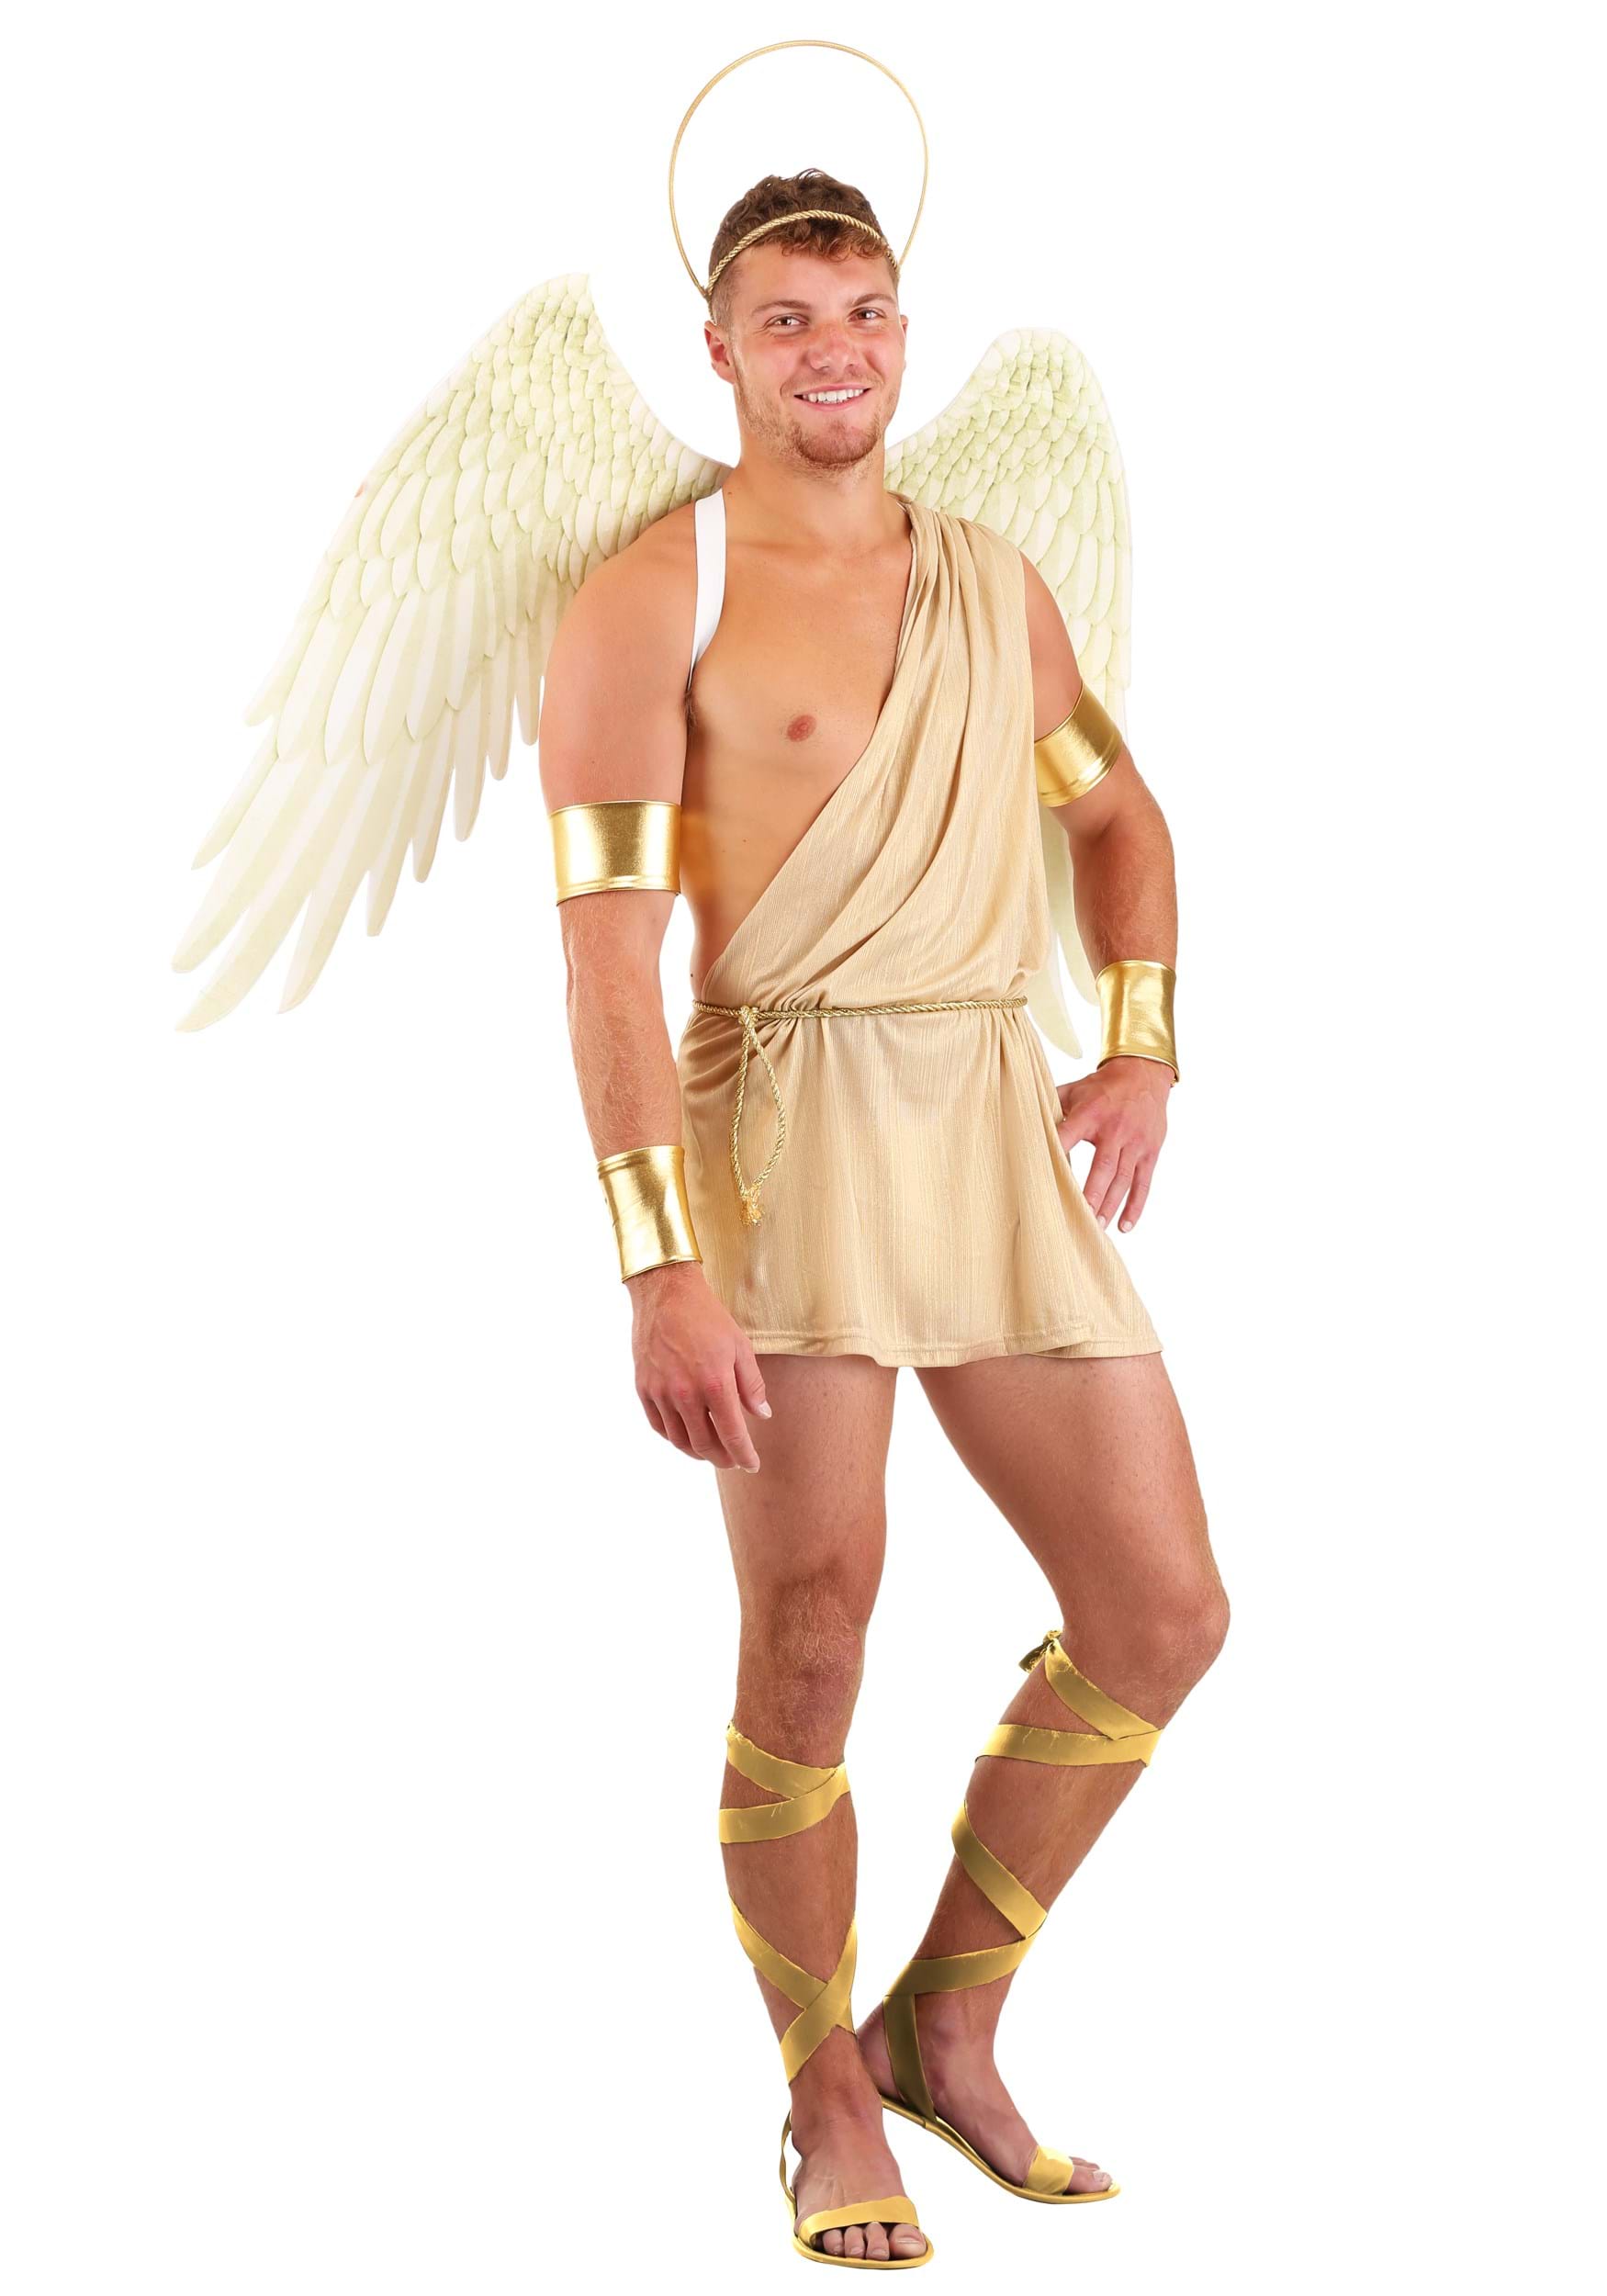 Angels men s. Костюм ангела. Ангел костюм мужской. Одежда ангела мужчины. Парень в костюме ангела.